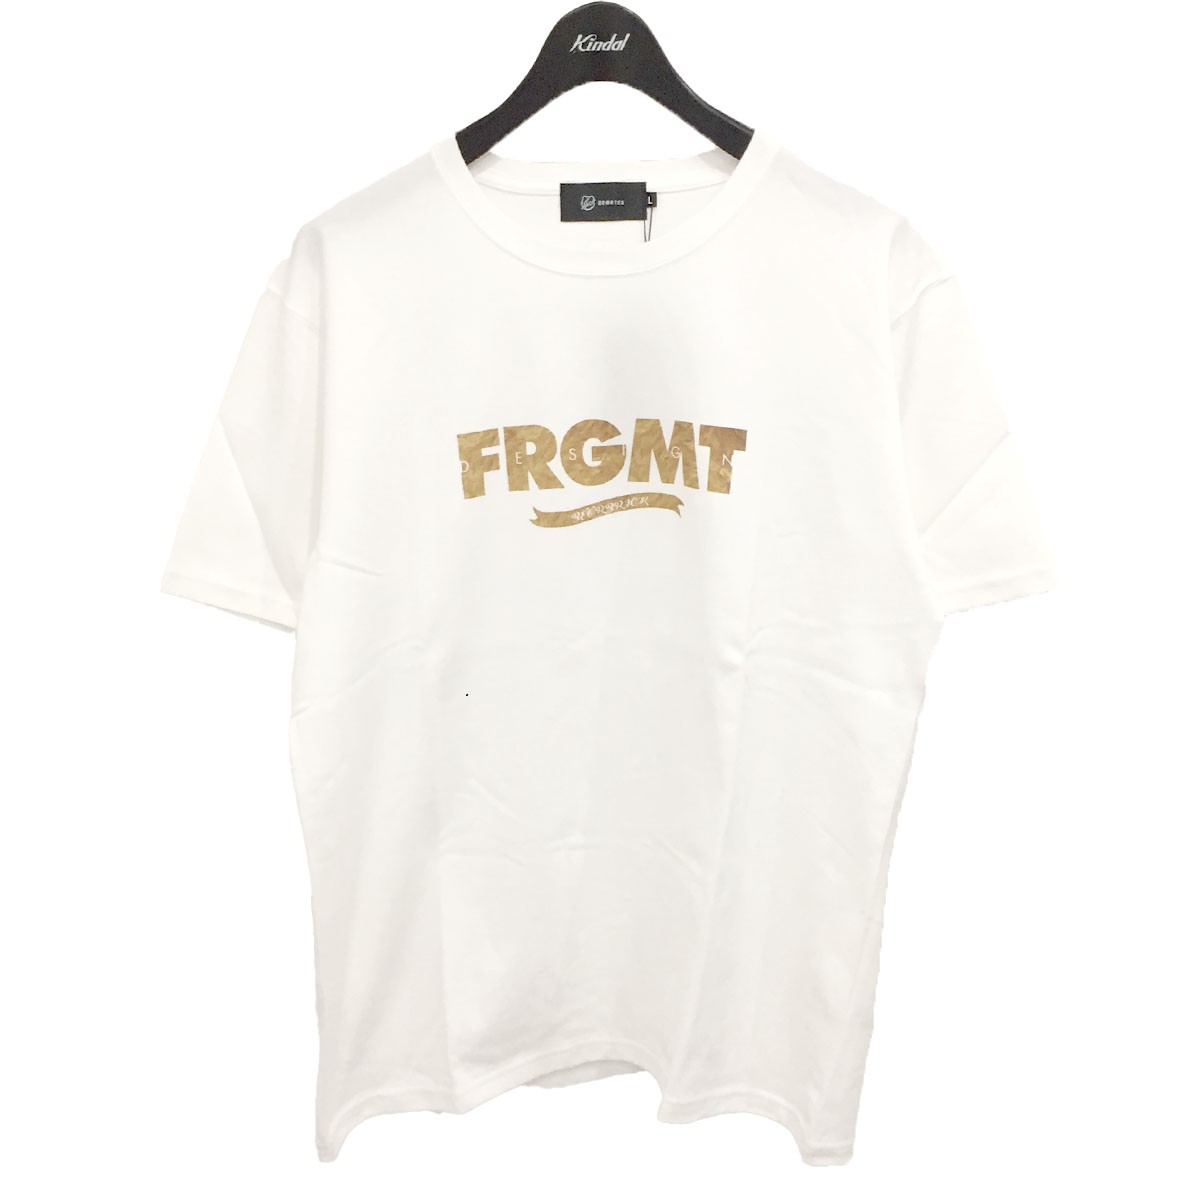 トップス, Tシャツ・カットソー FRAGMENT DESIGNBRRBTICK T L 011221 